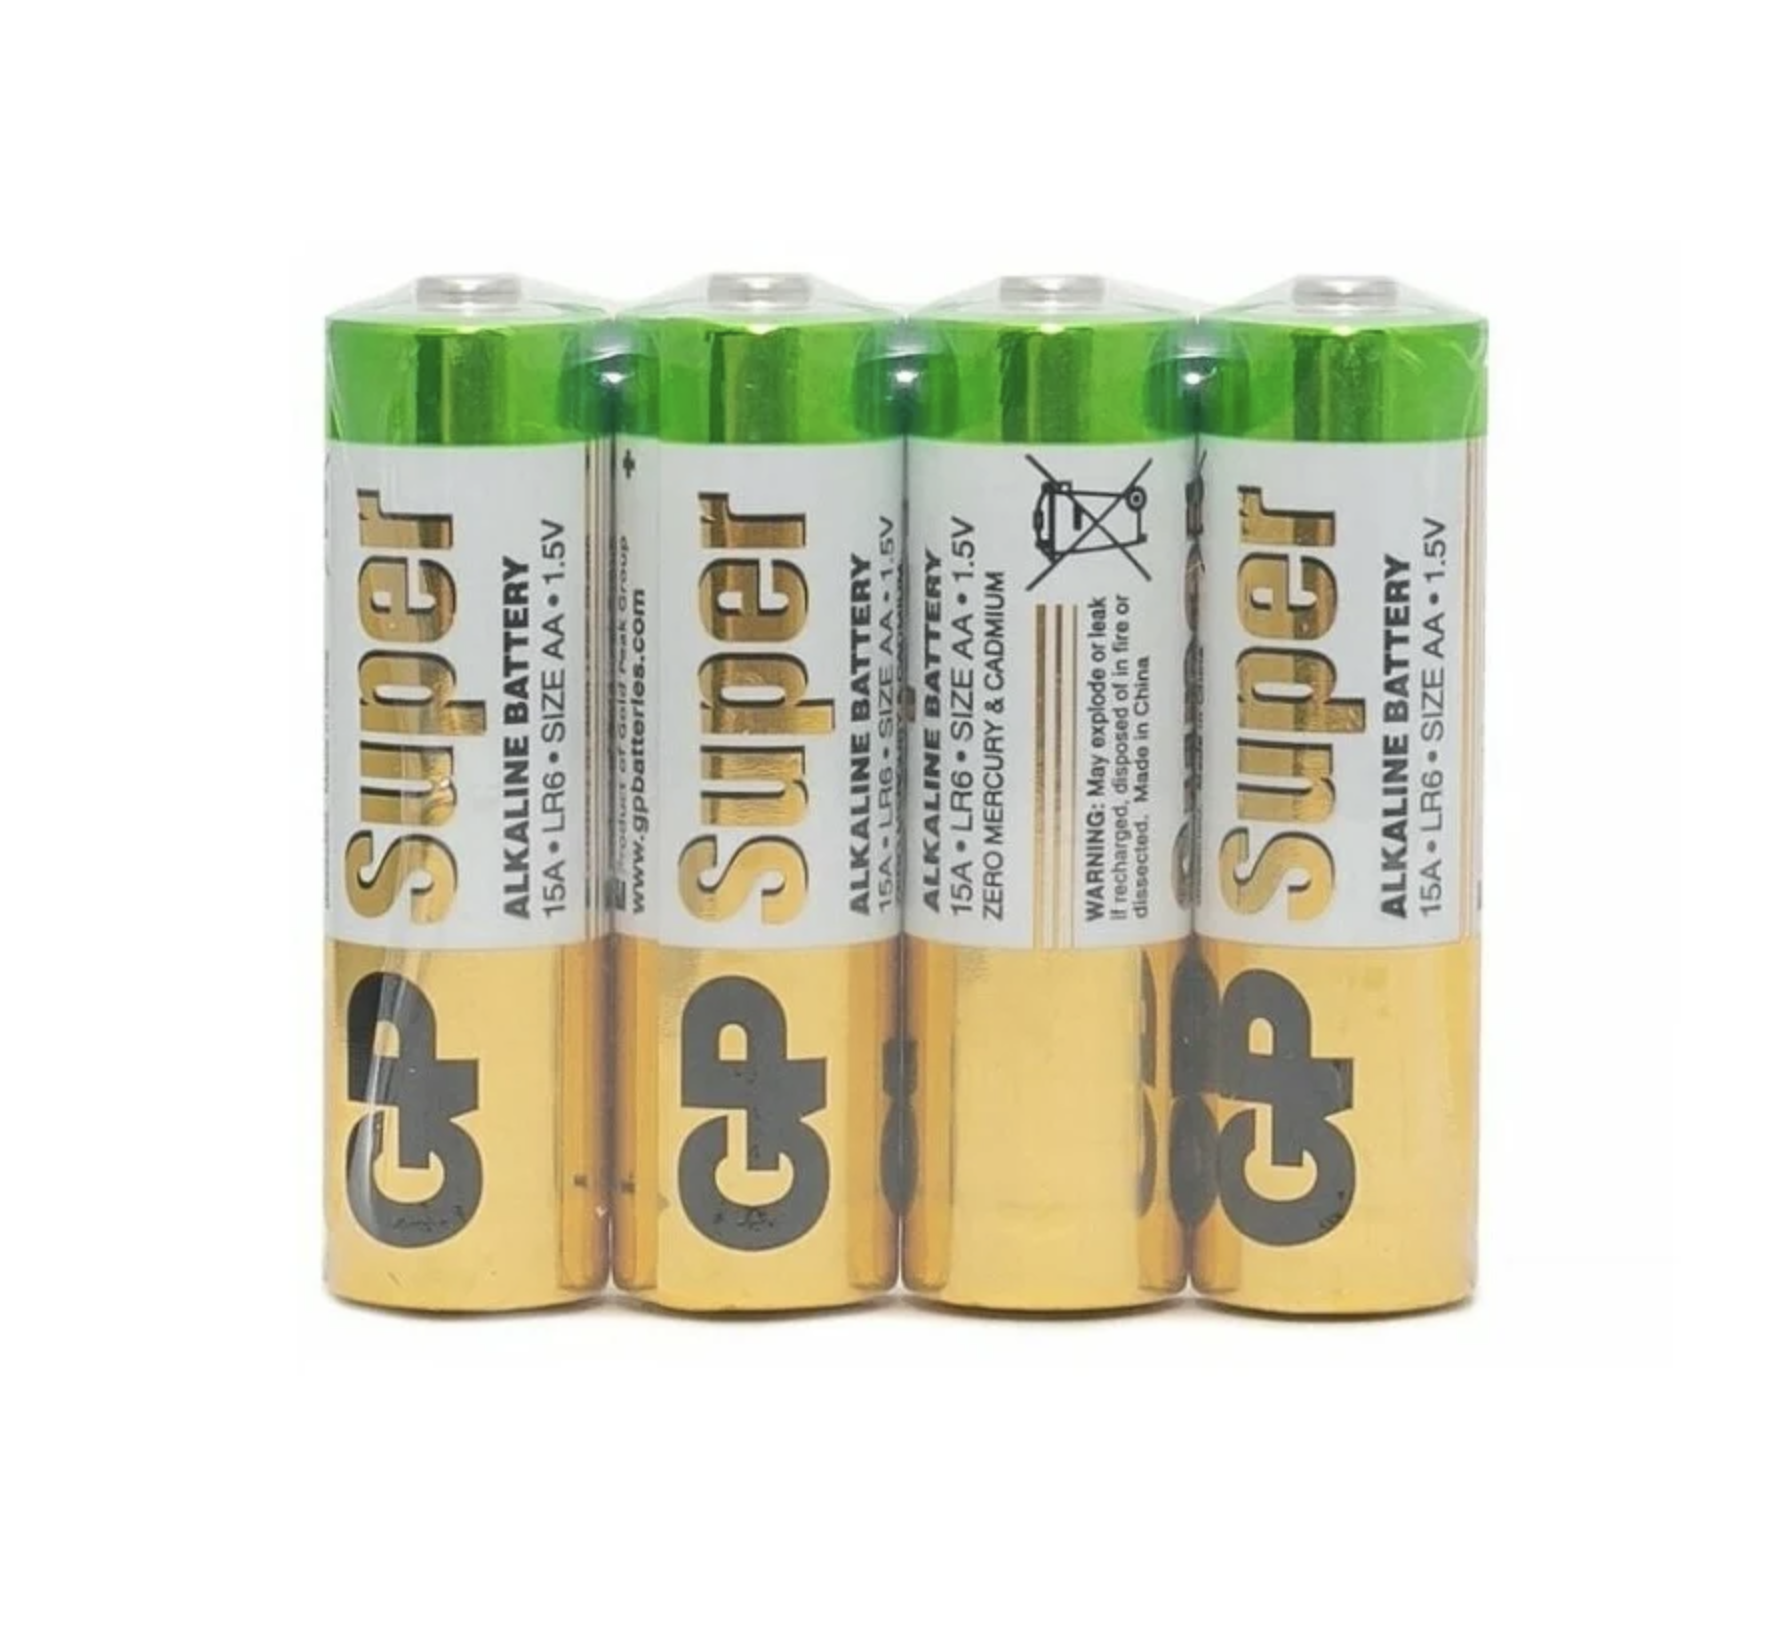  GP -  Super Alkaline Battery  15A LR6 1.5V 4 